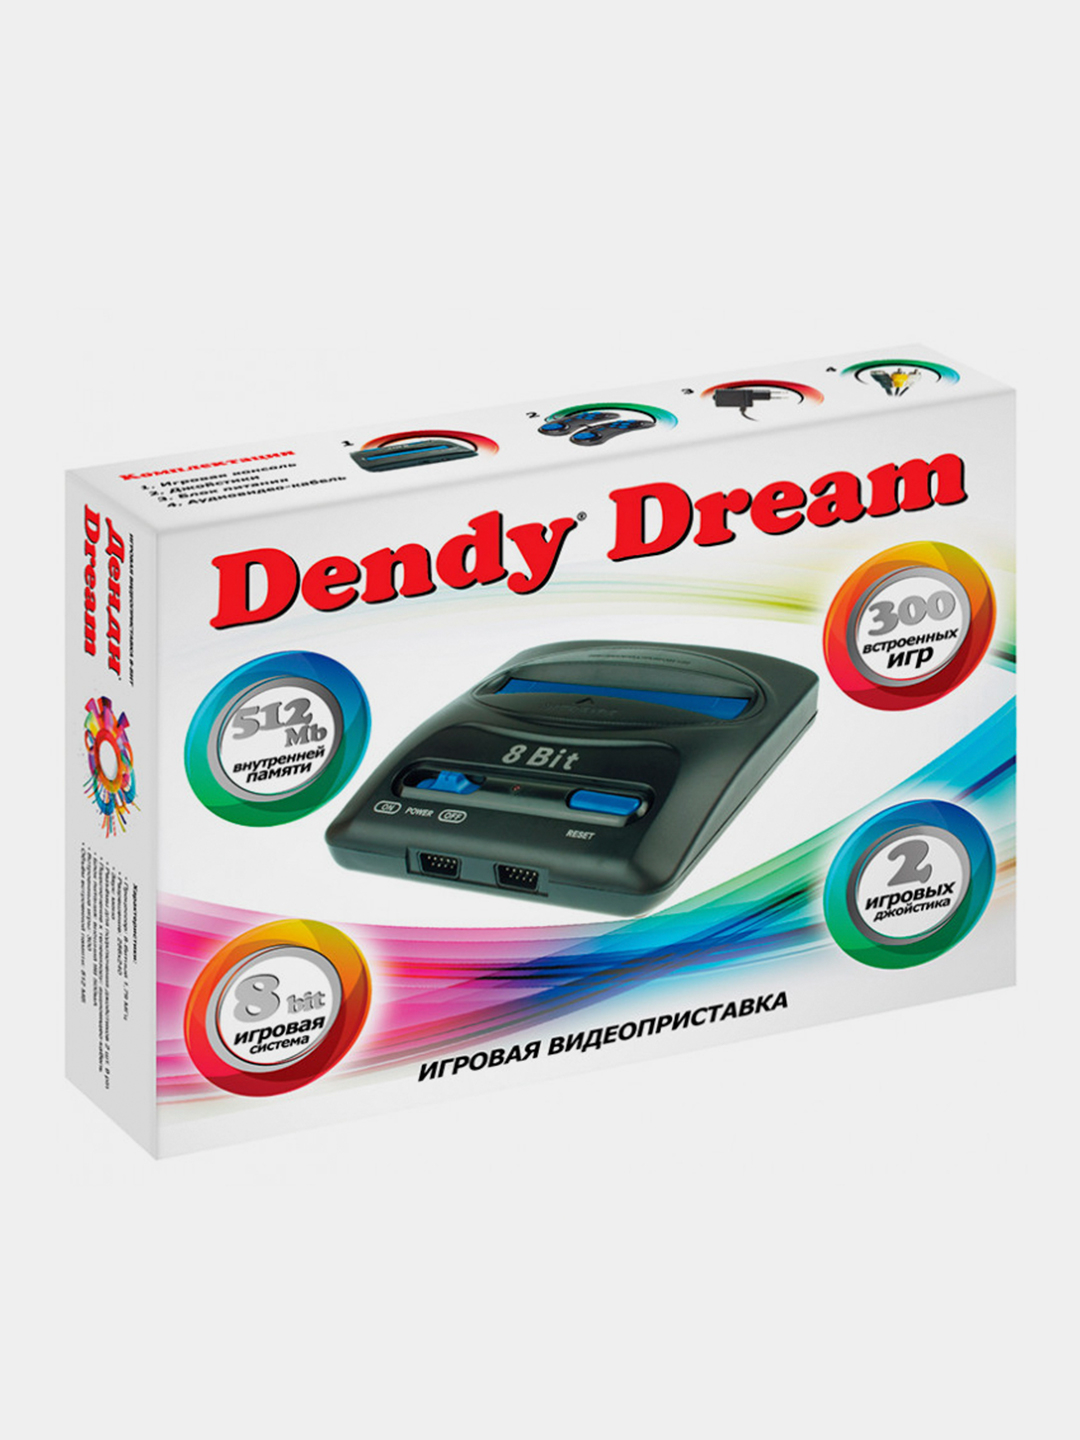 Приставка 300 игр. Dendy Dream 300 игр. Приставку Денди в 300 встроенных игр. Игровая консоль Dendy Master 300 игр. Приставка Денди флешка.